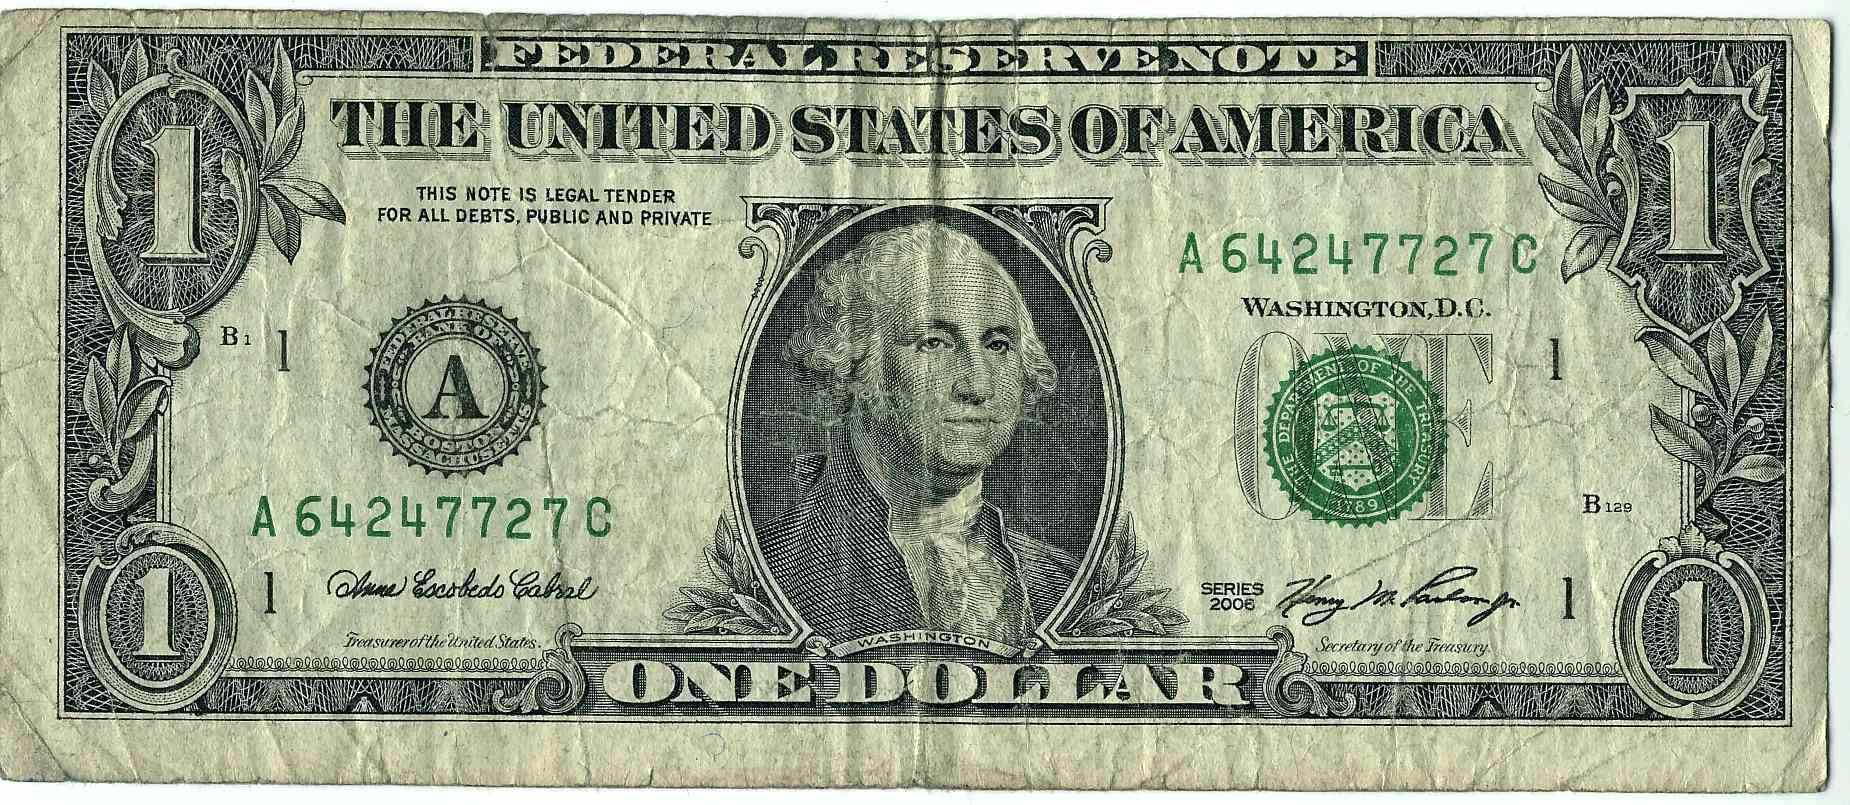 93+ Fake Dollar Bill Printable - Fake Money Printable Australian - Free Printable Fake Money That Looks Real